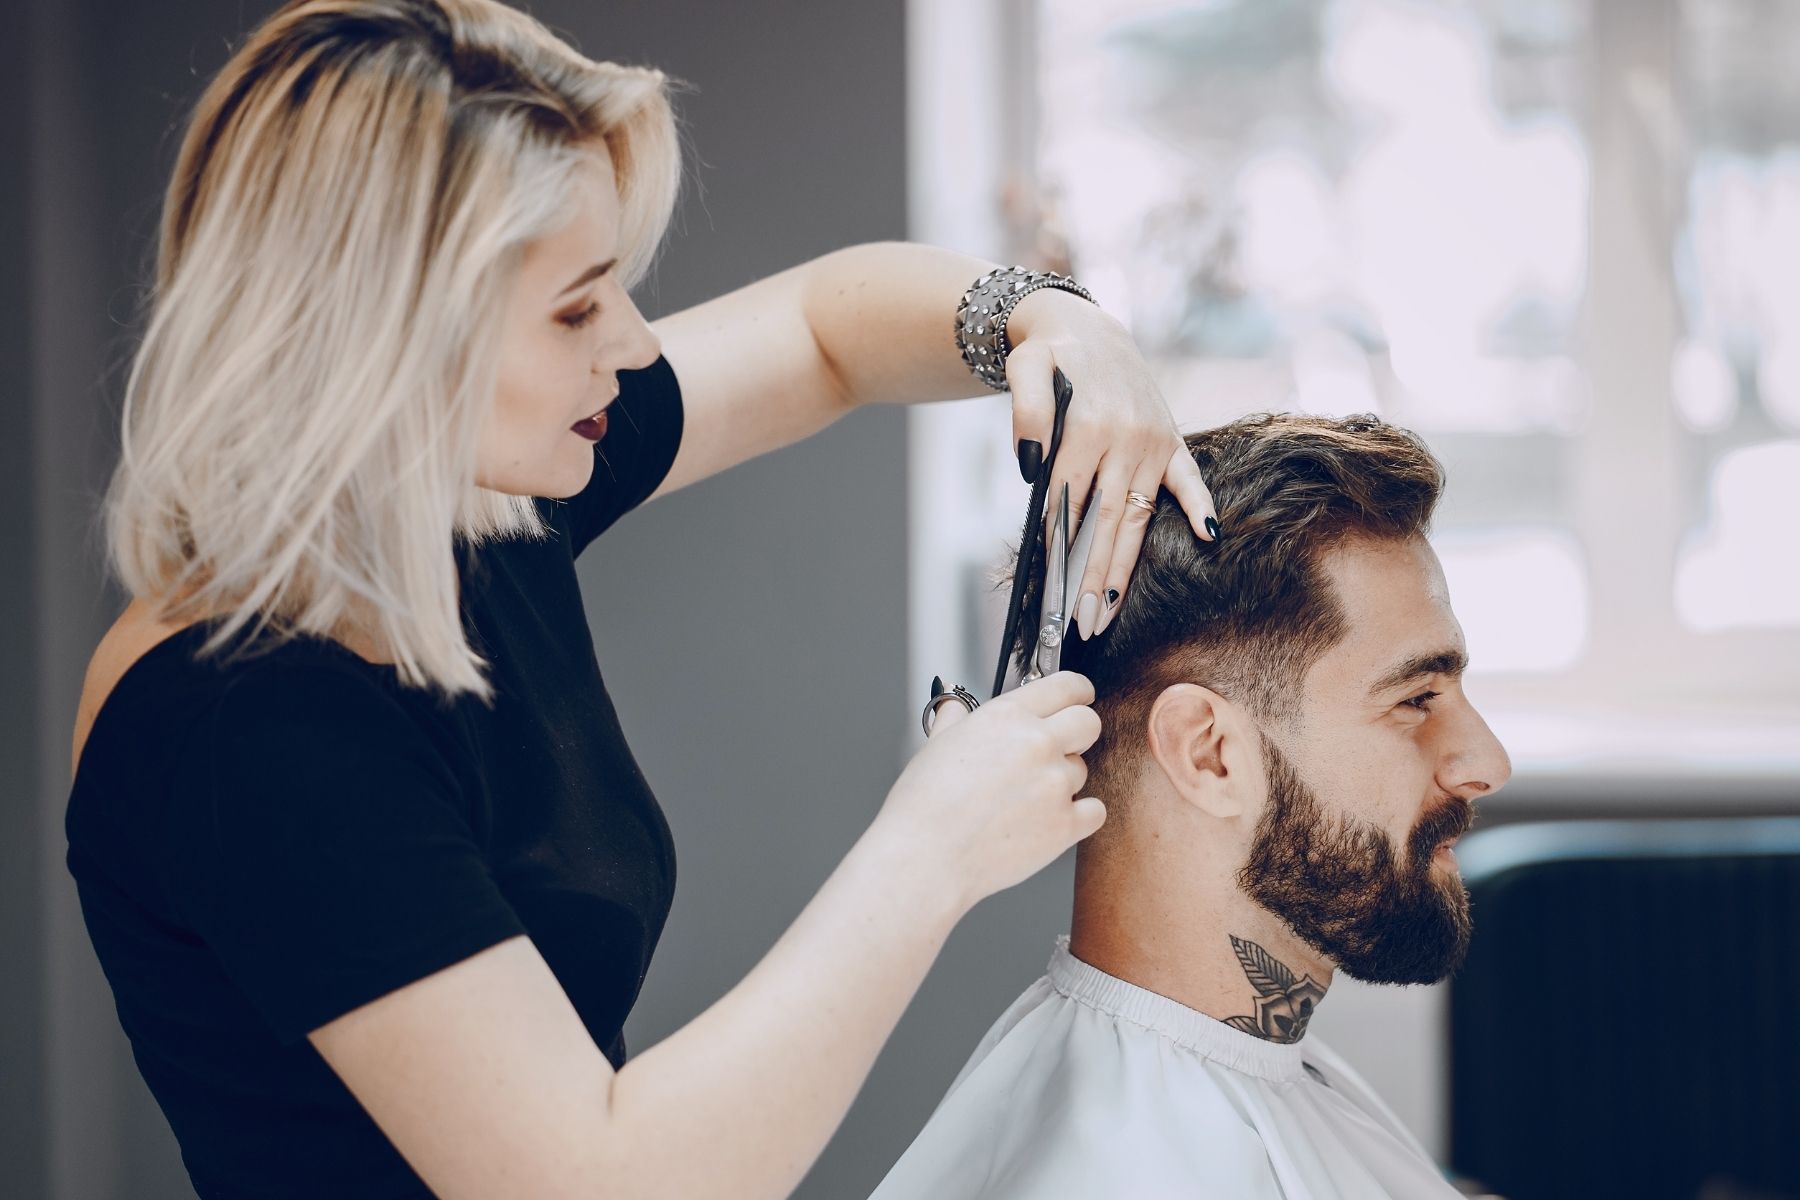 Hairstylist cutting man's hair